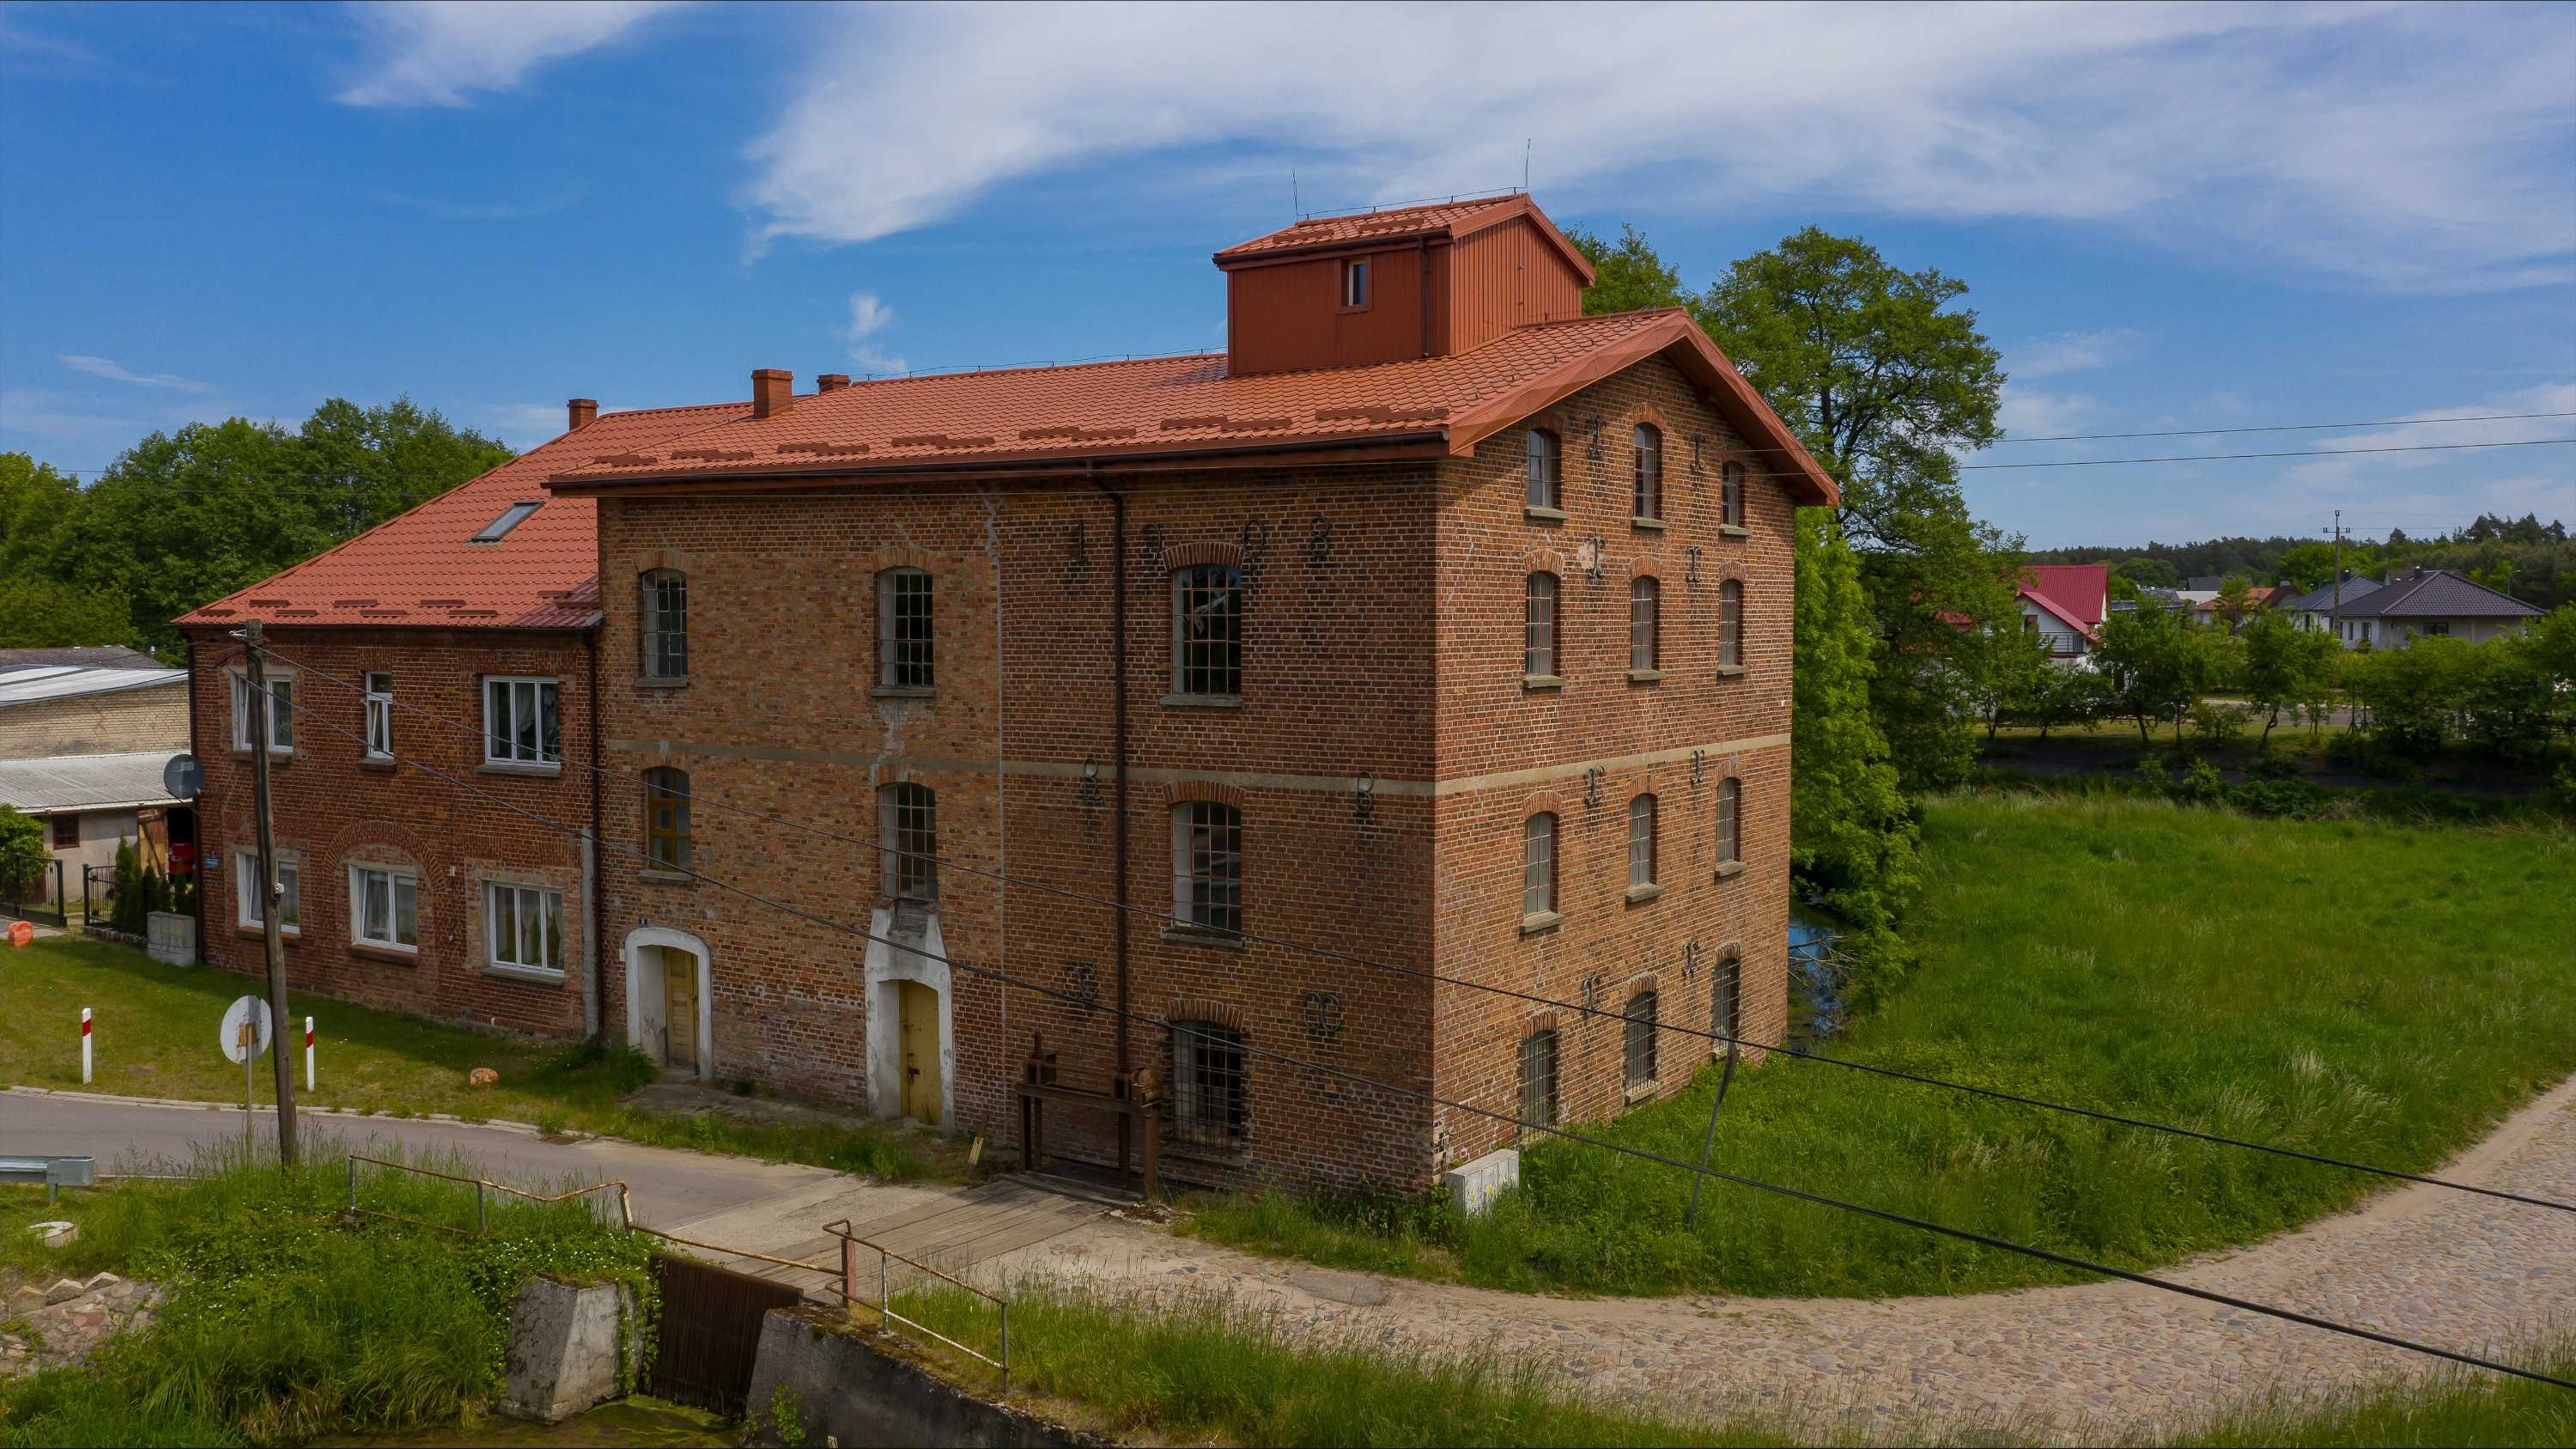 Fotky Historical mill in Slawoborze / Swidwin, West Pomerania